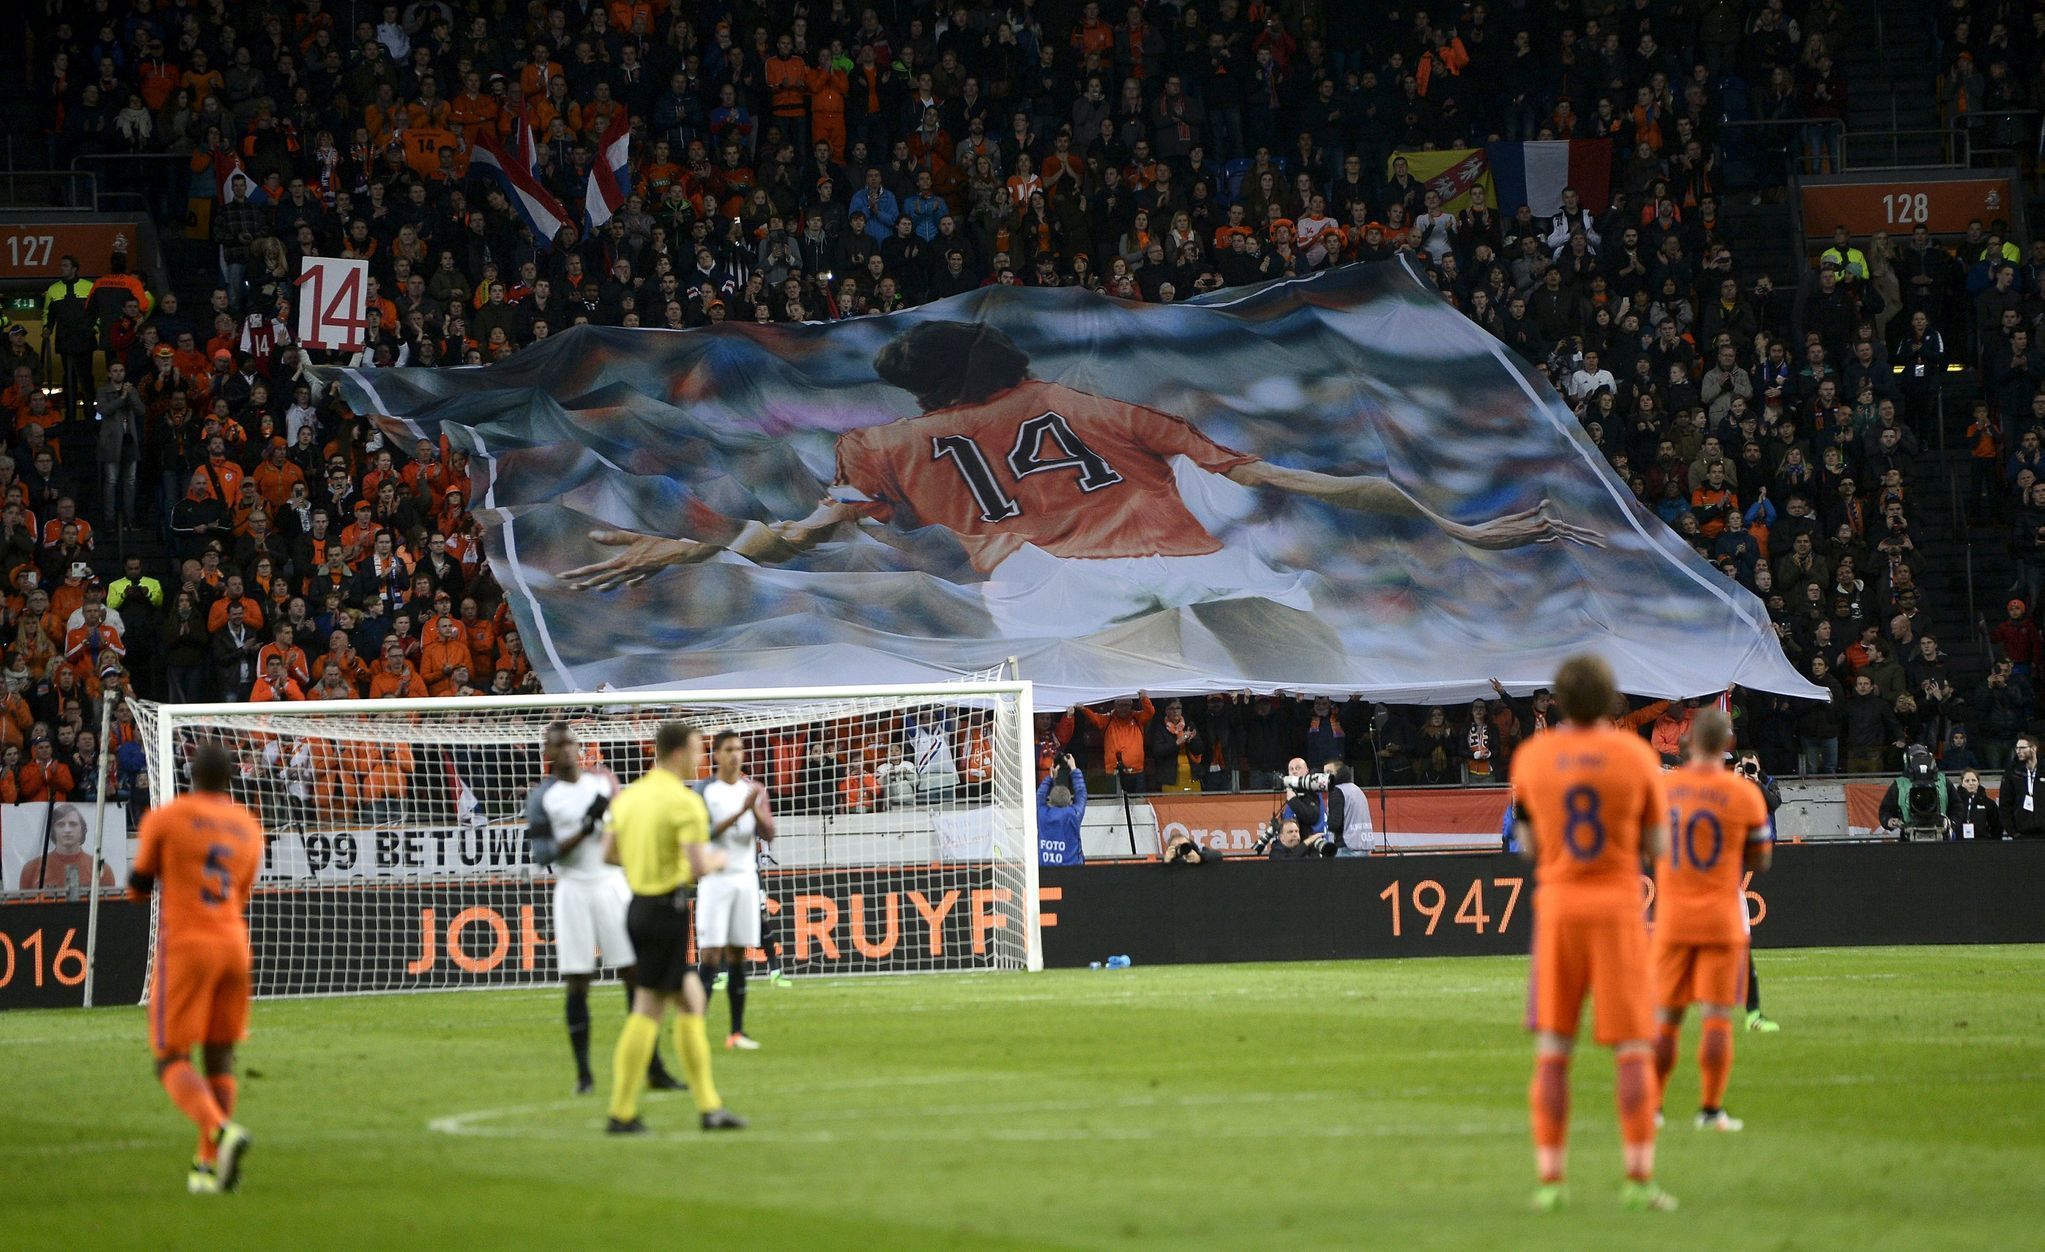 Přátelský zápas Francie vs. Nizozemsko (Cruyff choreo)